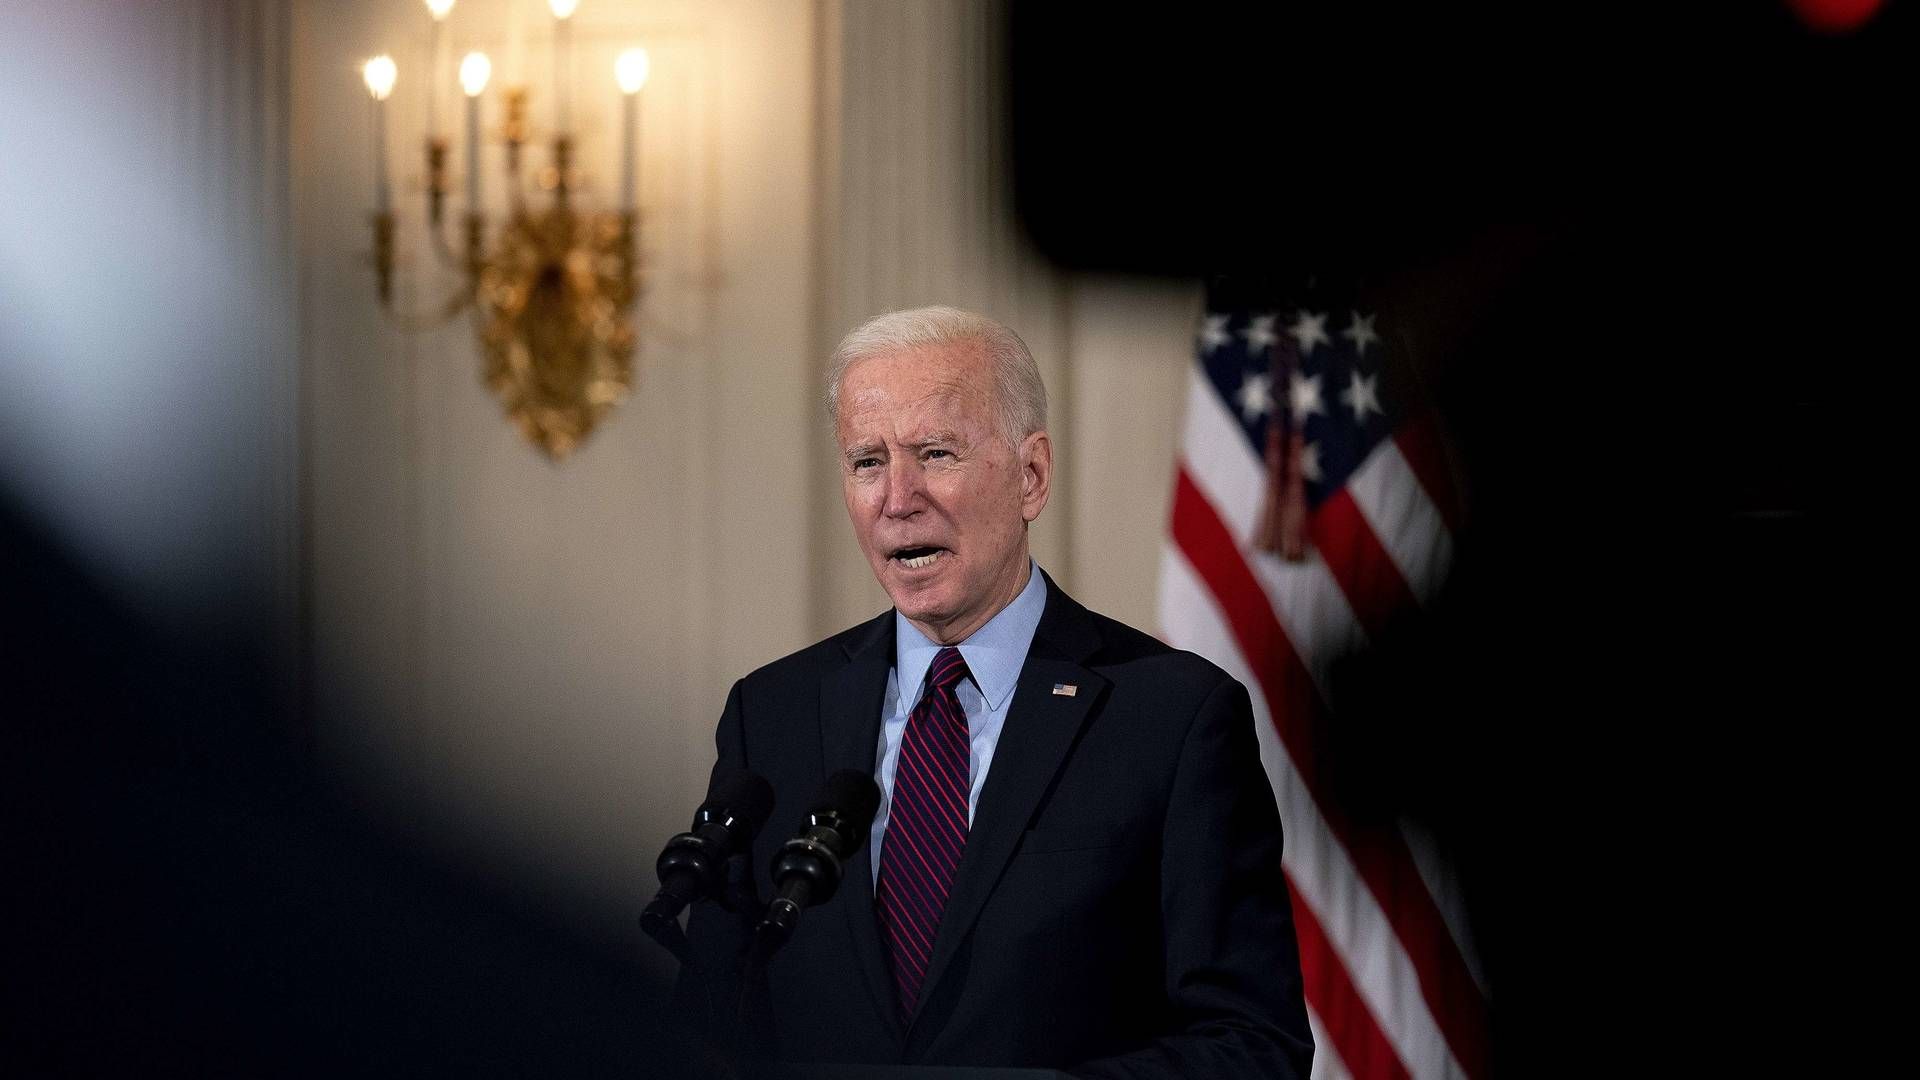 "Det er folks liv. Mennesker ude i det virkelige liv har det svært, og vi kan hjælpe," siger Biden i en tale i Det Hvide Hus fredag. | Foto: POOL/AFP / GETTY IMAGES NORTH AMERICA